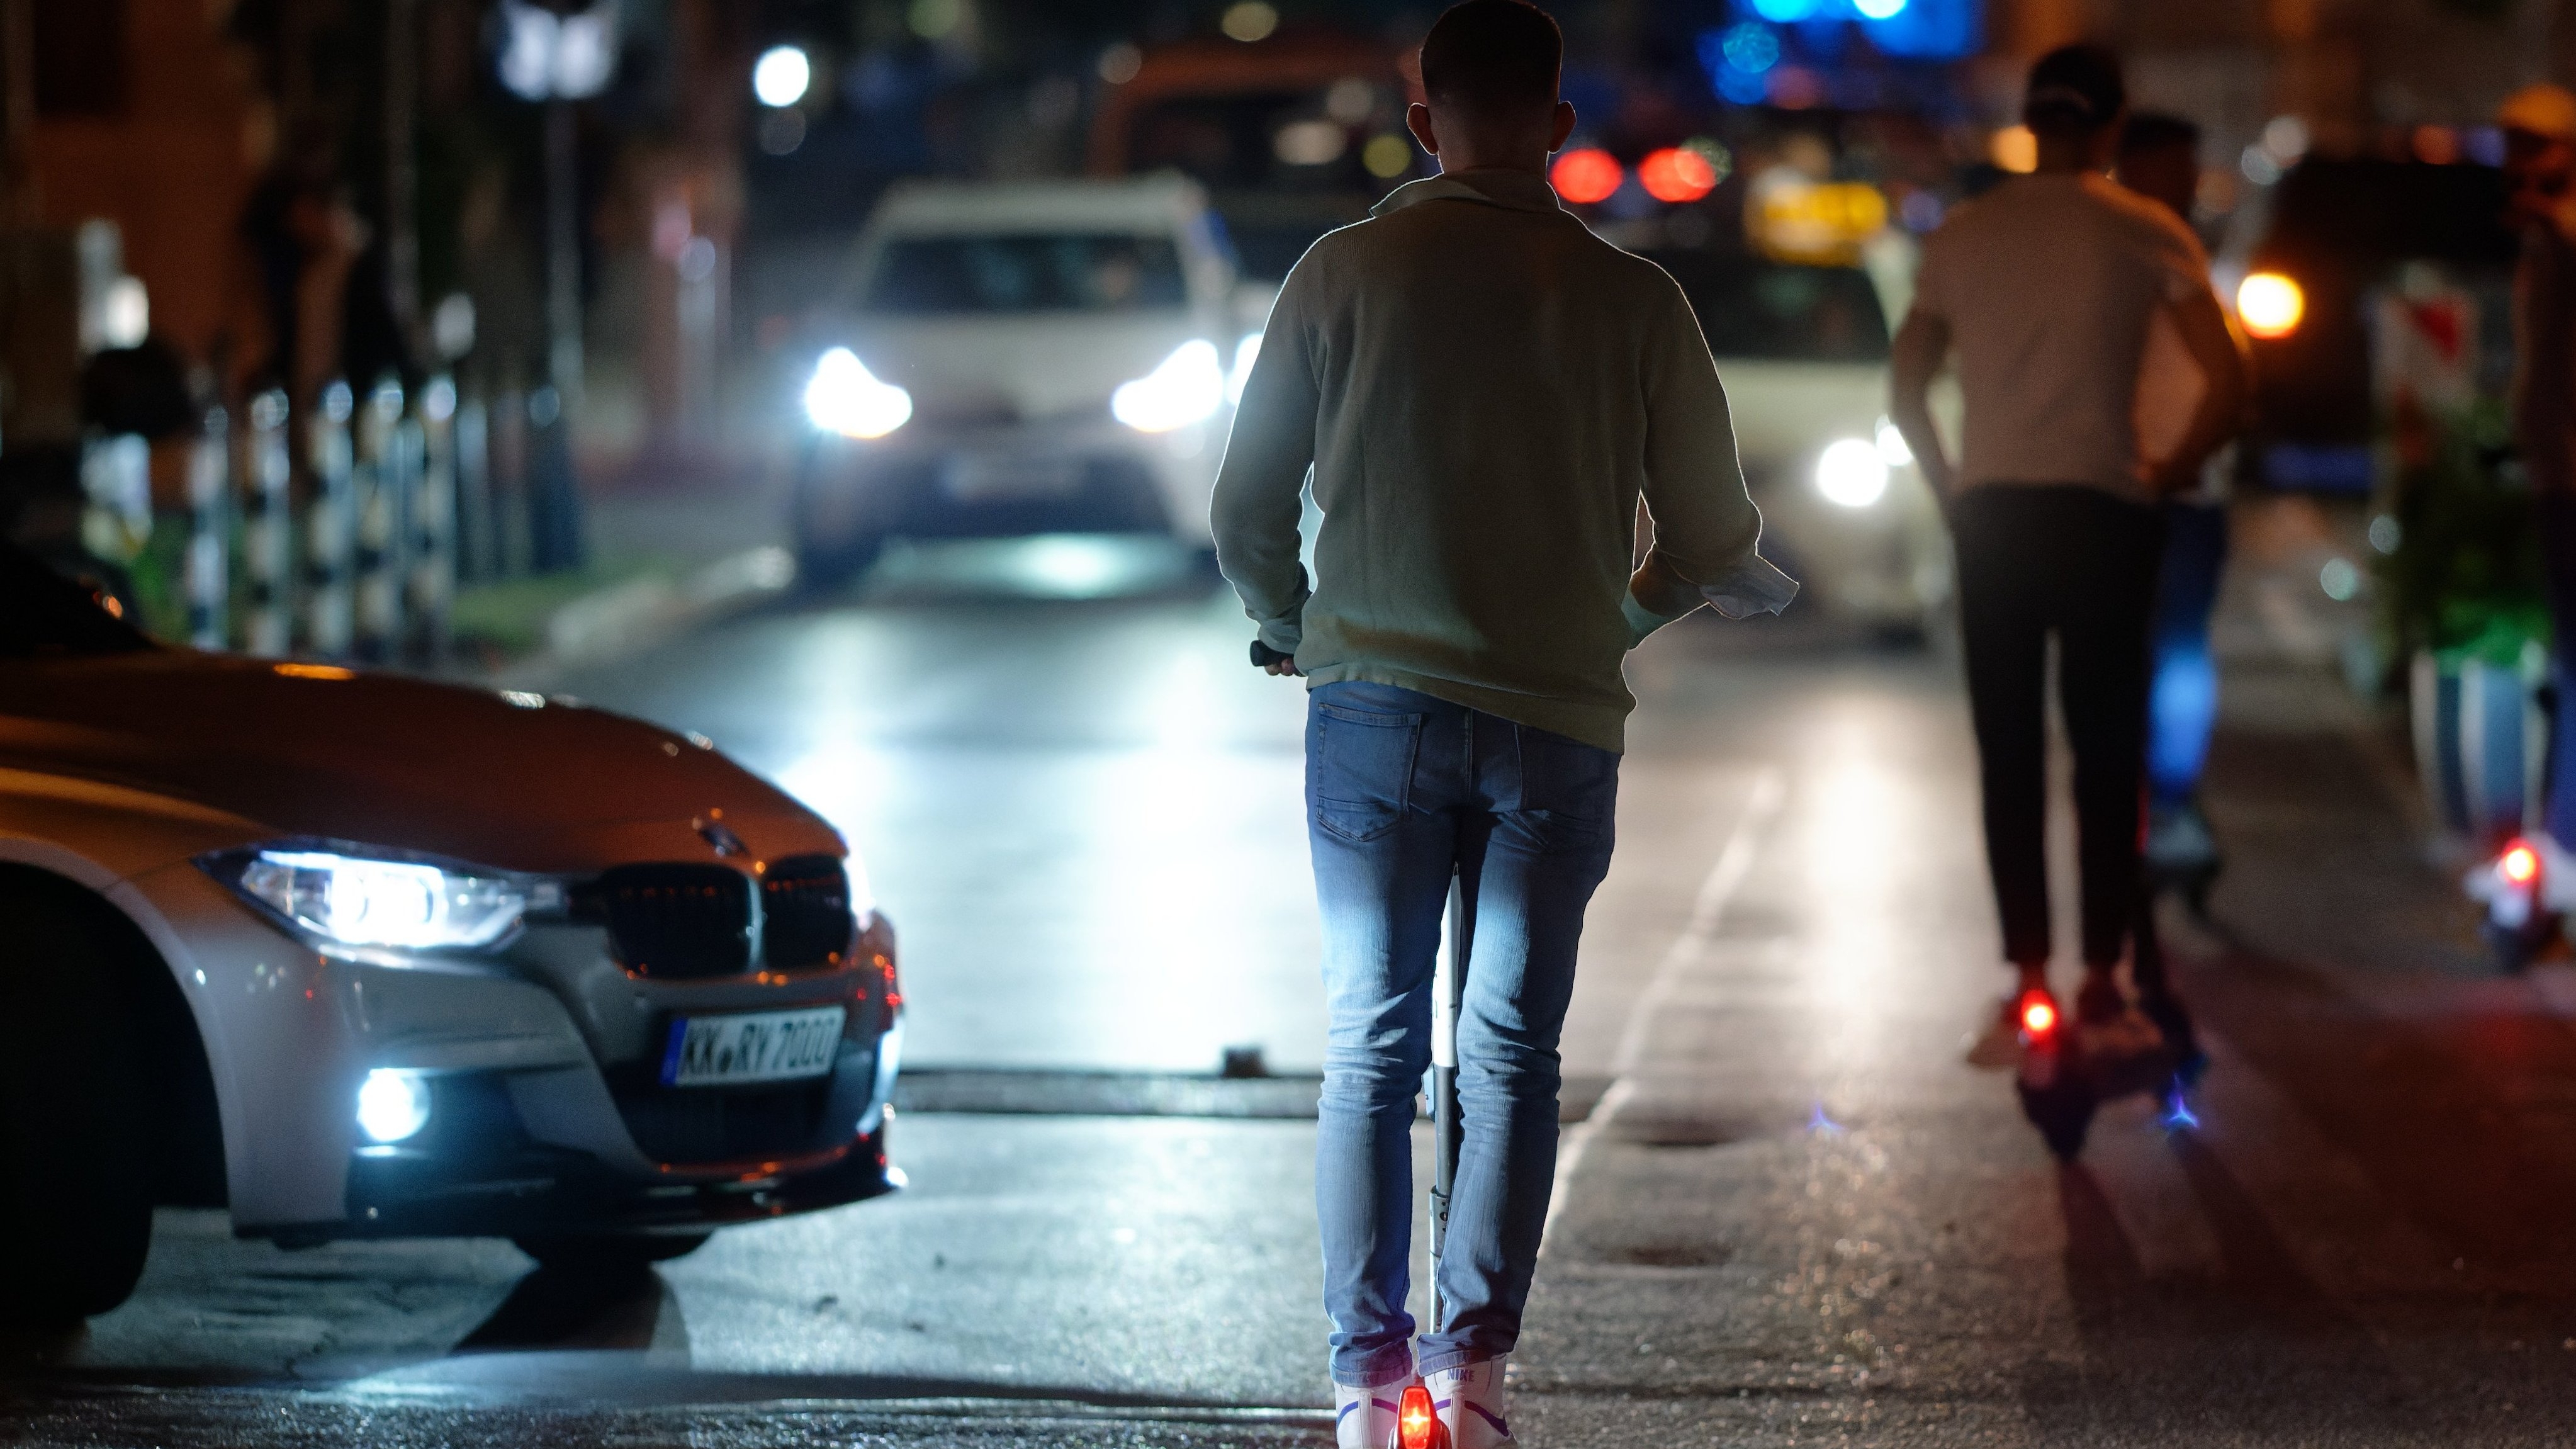 München: Betrunken auf dem E-Scooter? Promille-Brille verdeutlicht